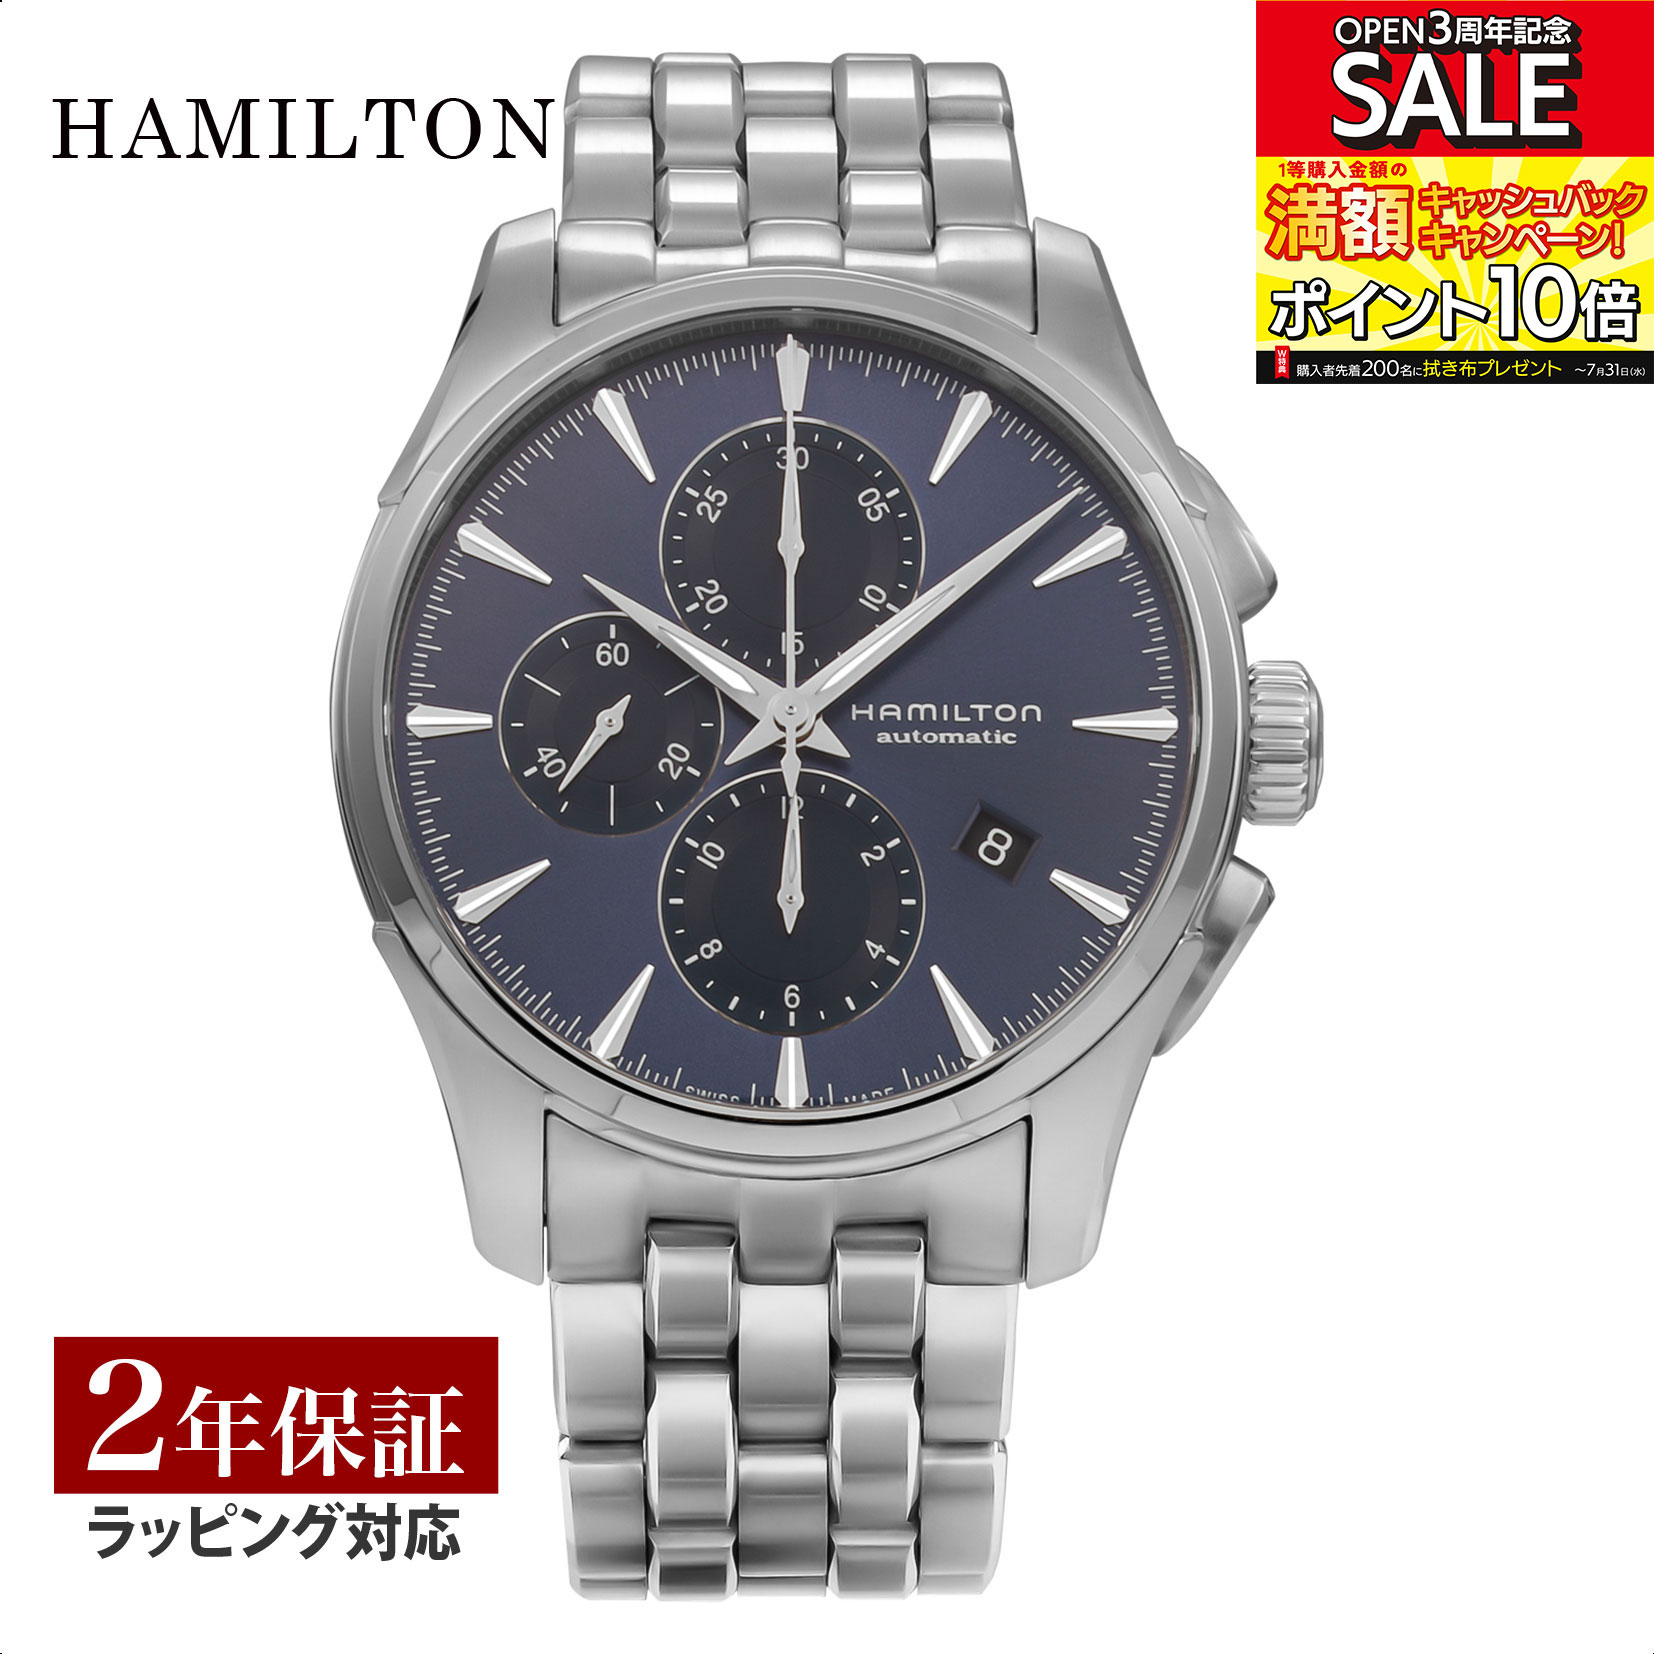 ハミルトン HAMILTON メンズ 時計 JAZZMASTER ジャズマスター 自動巻 ブルー H32586141 時計 腕時計 高級腕時計 ブランド